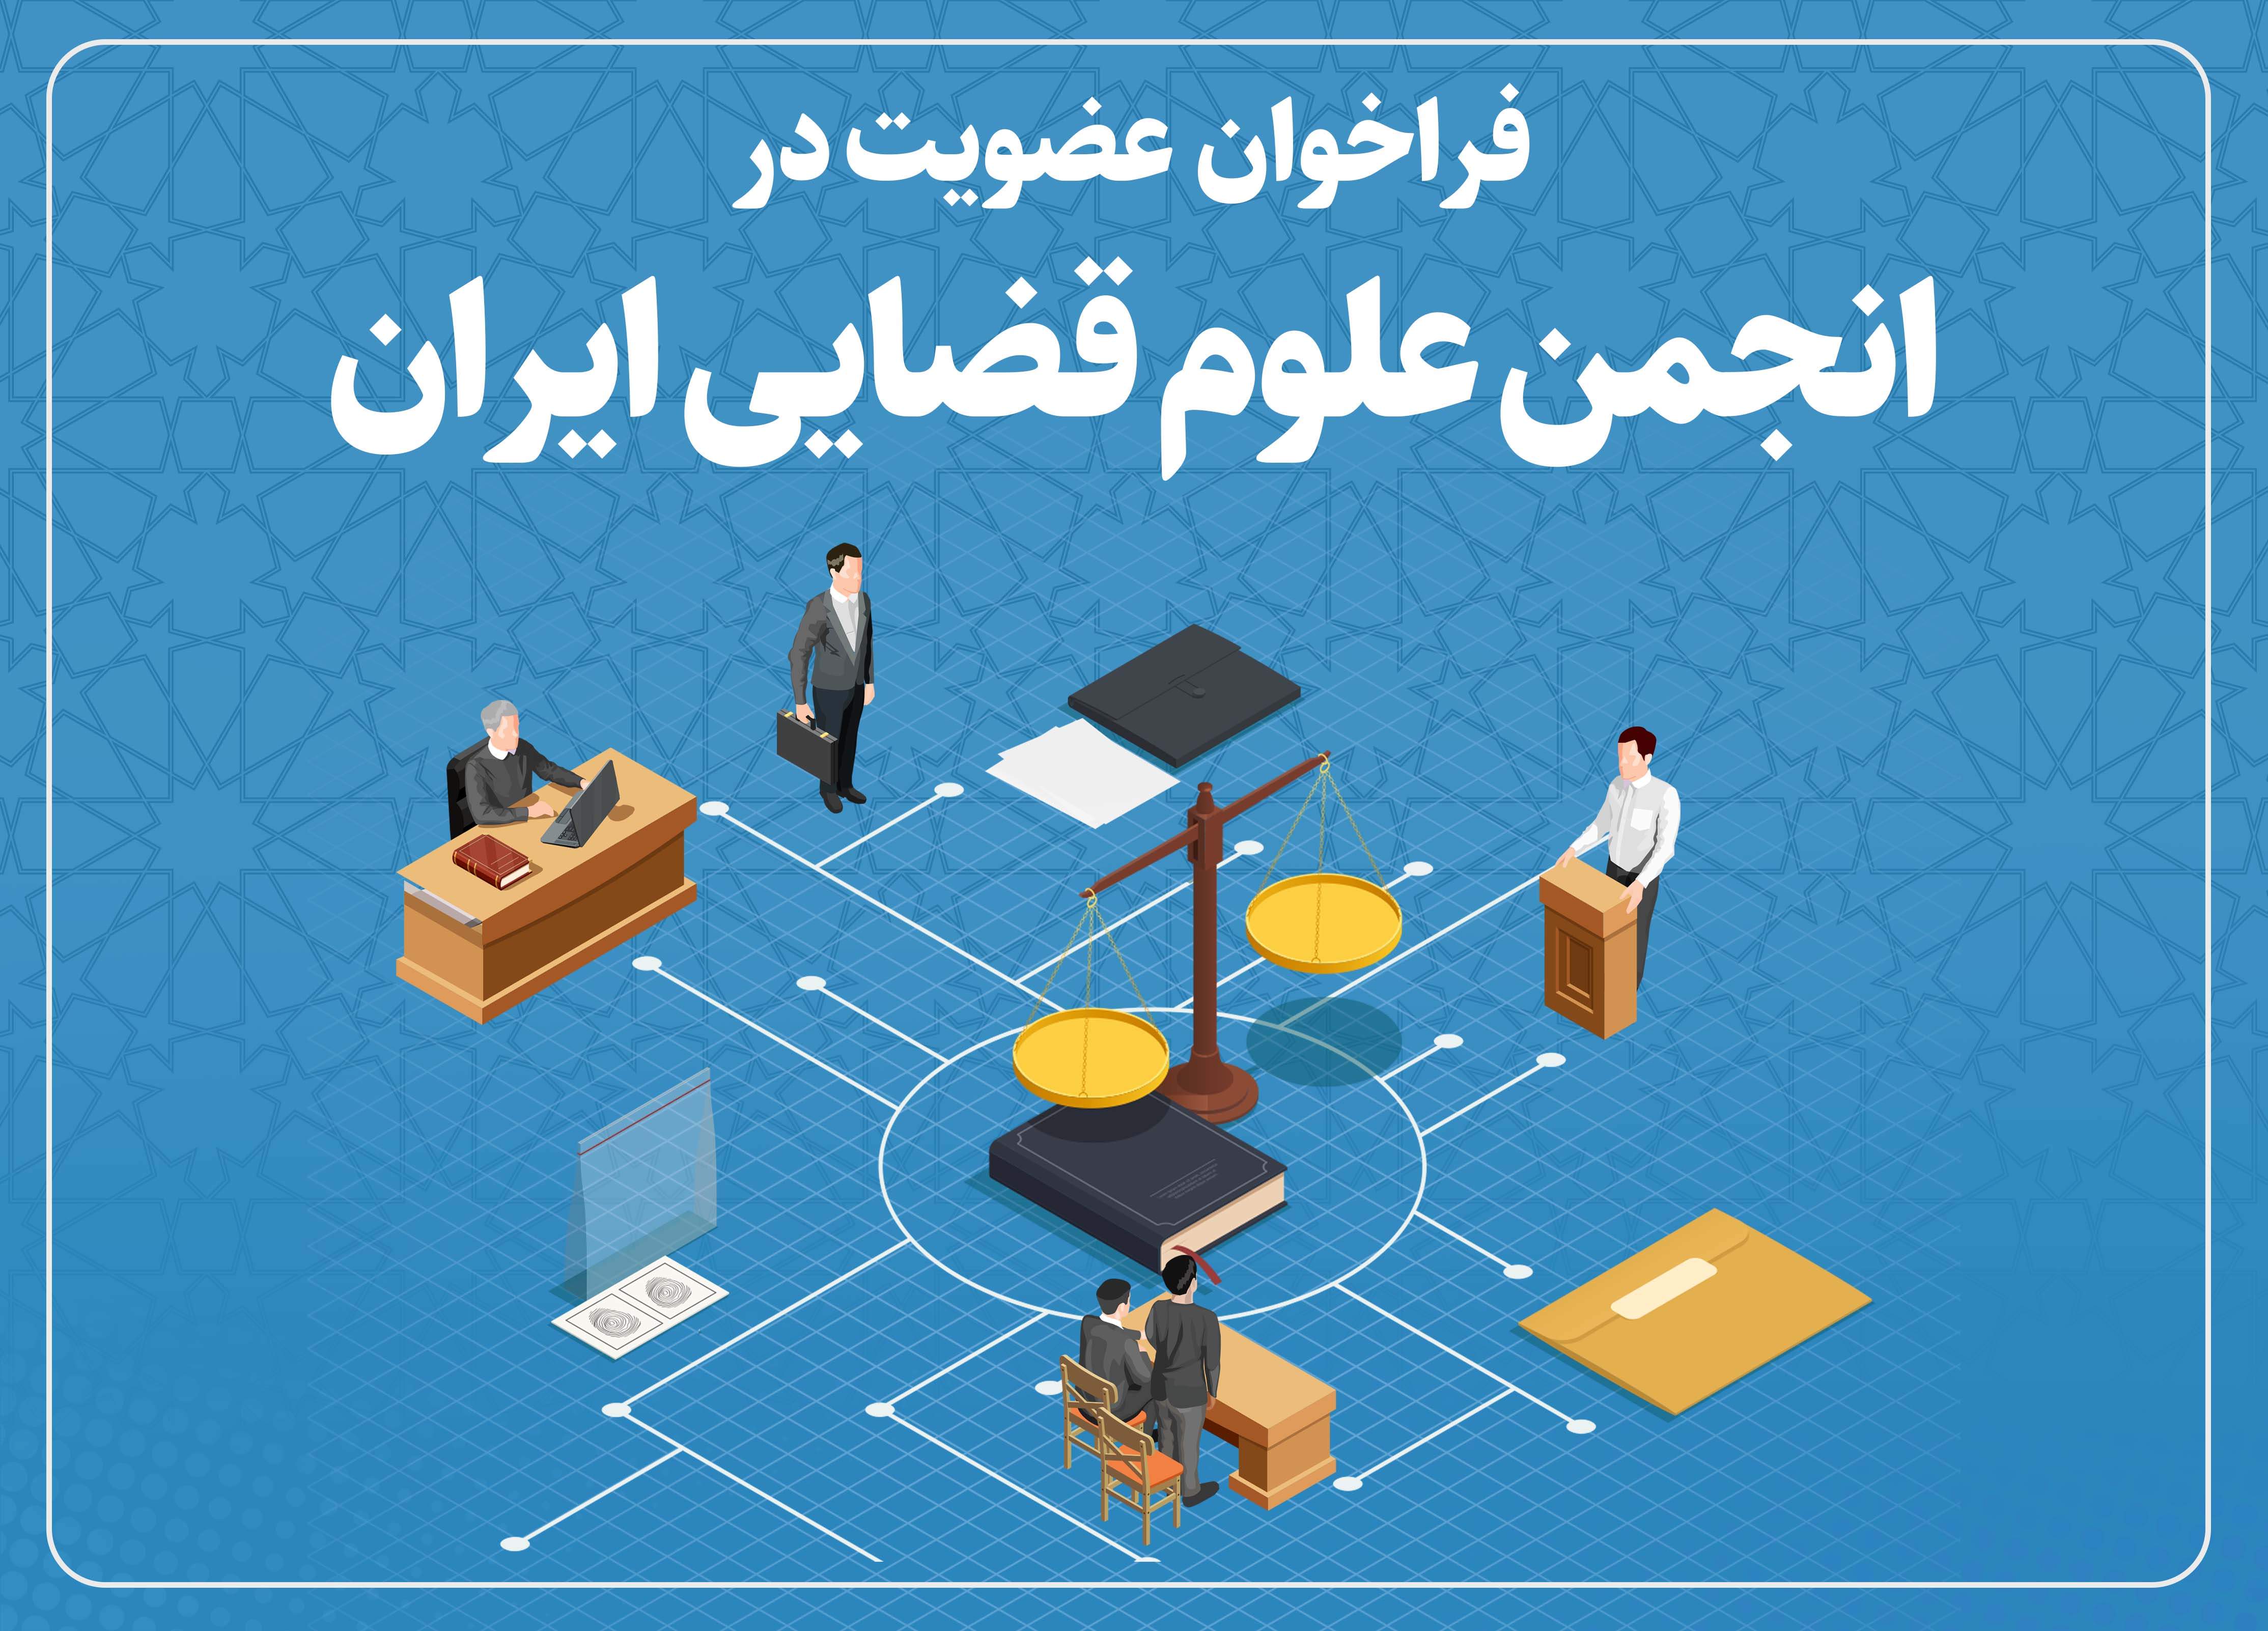 انجمن علوم قضایی ایران فراخوان عضویت داد